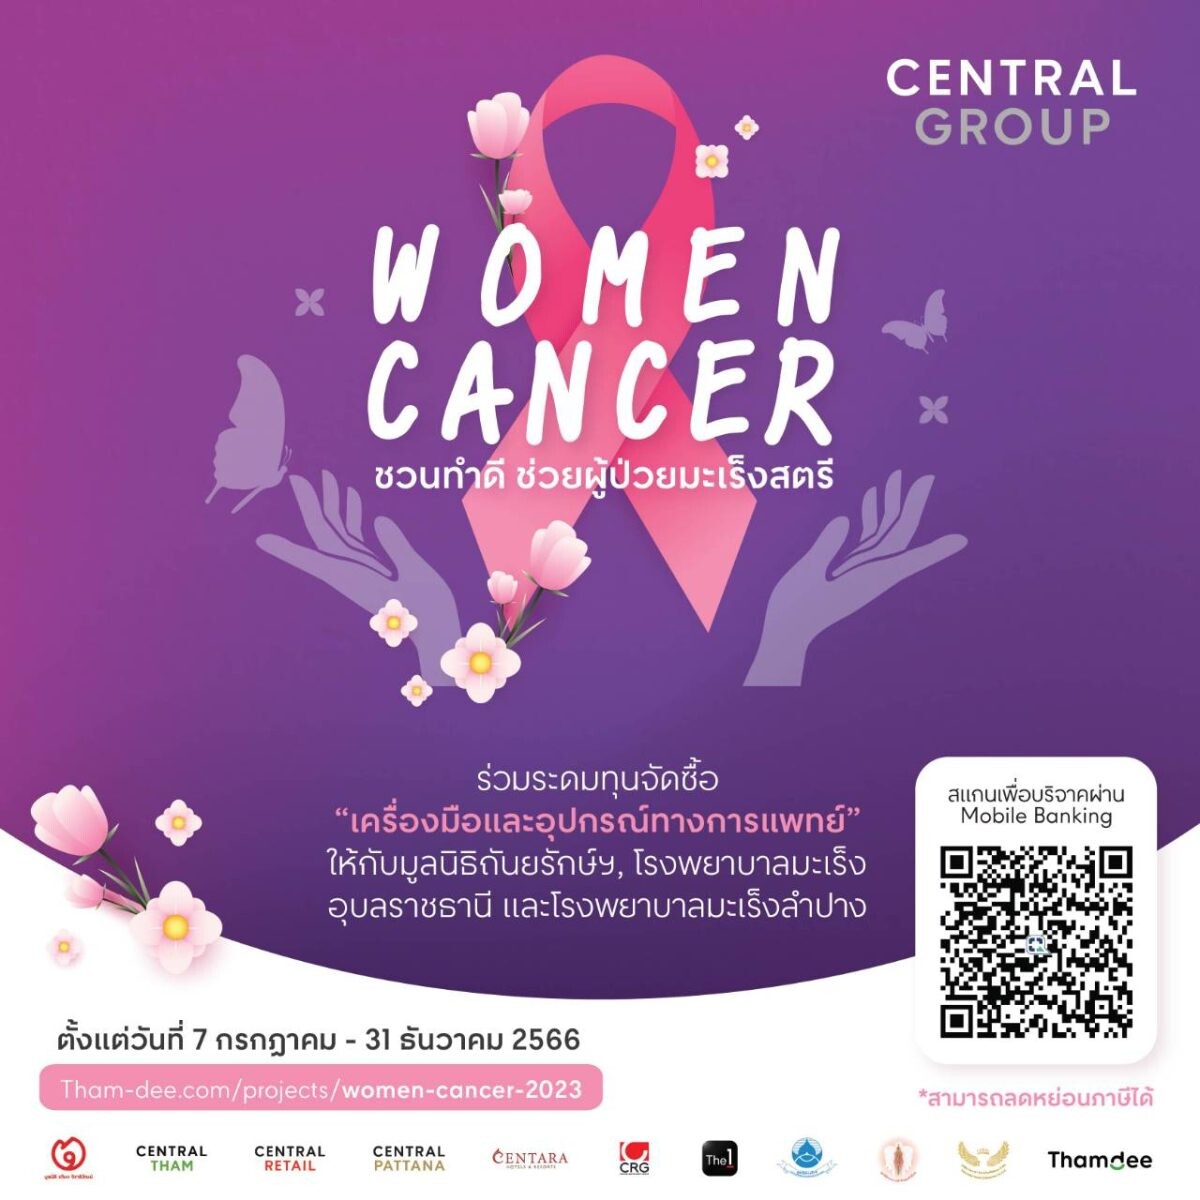 กลุ่มเซ็นทรัล และบริษัทในเครือ ชวนระดมทุนจัดซื้อ "เครื่องมือและอุปกรณ์การแพทย์" กับโครงการ "Central Group Women Cancer" ครั้งที่ 18